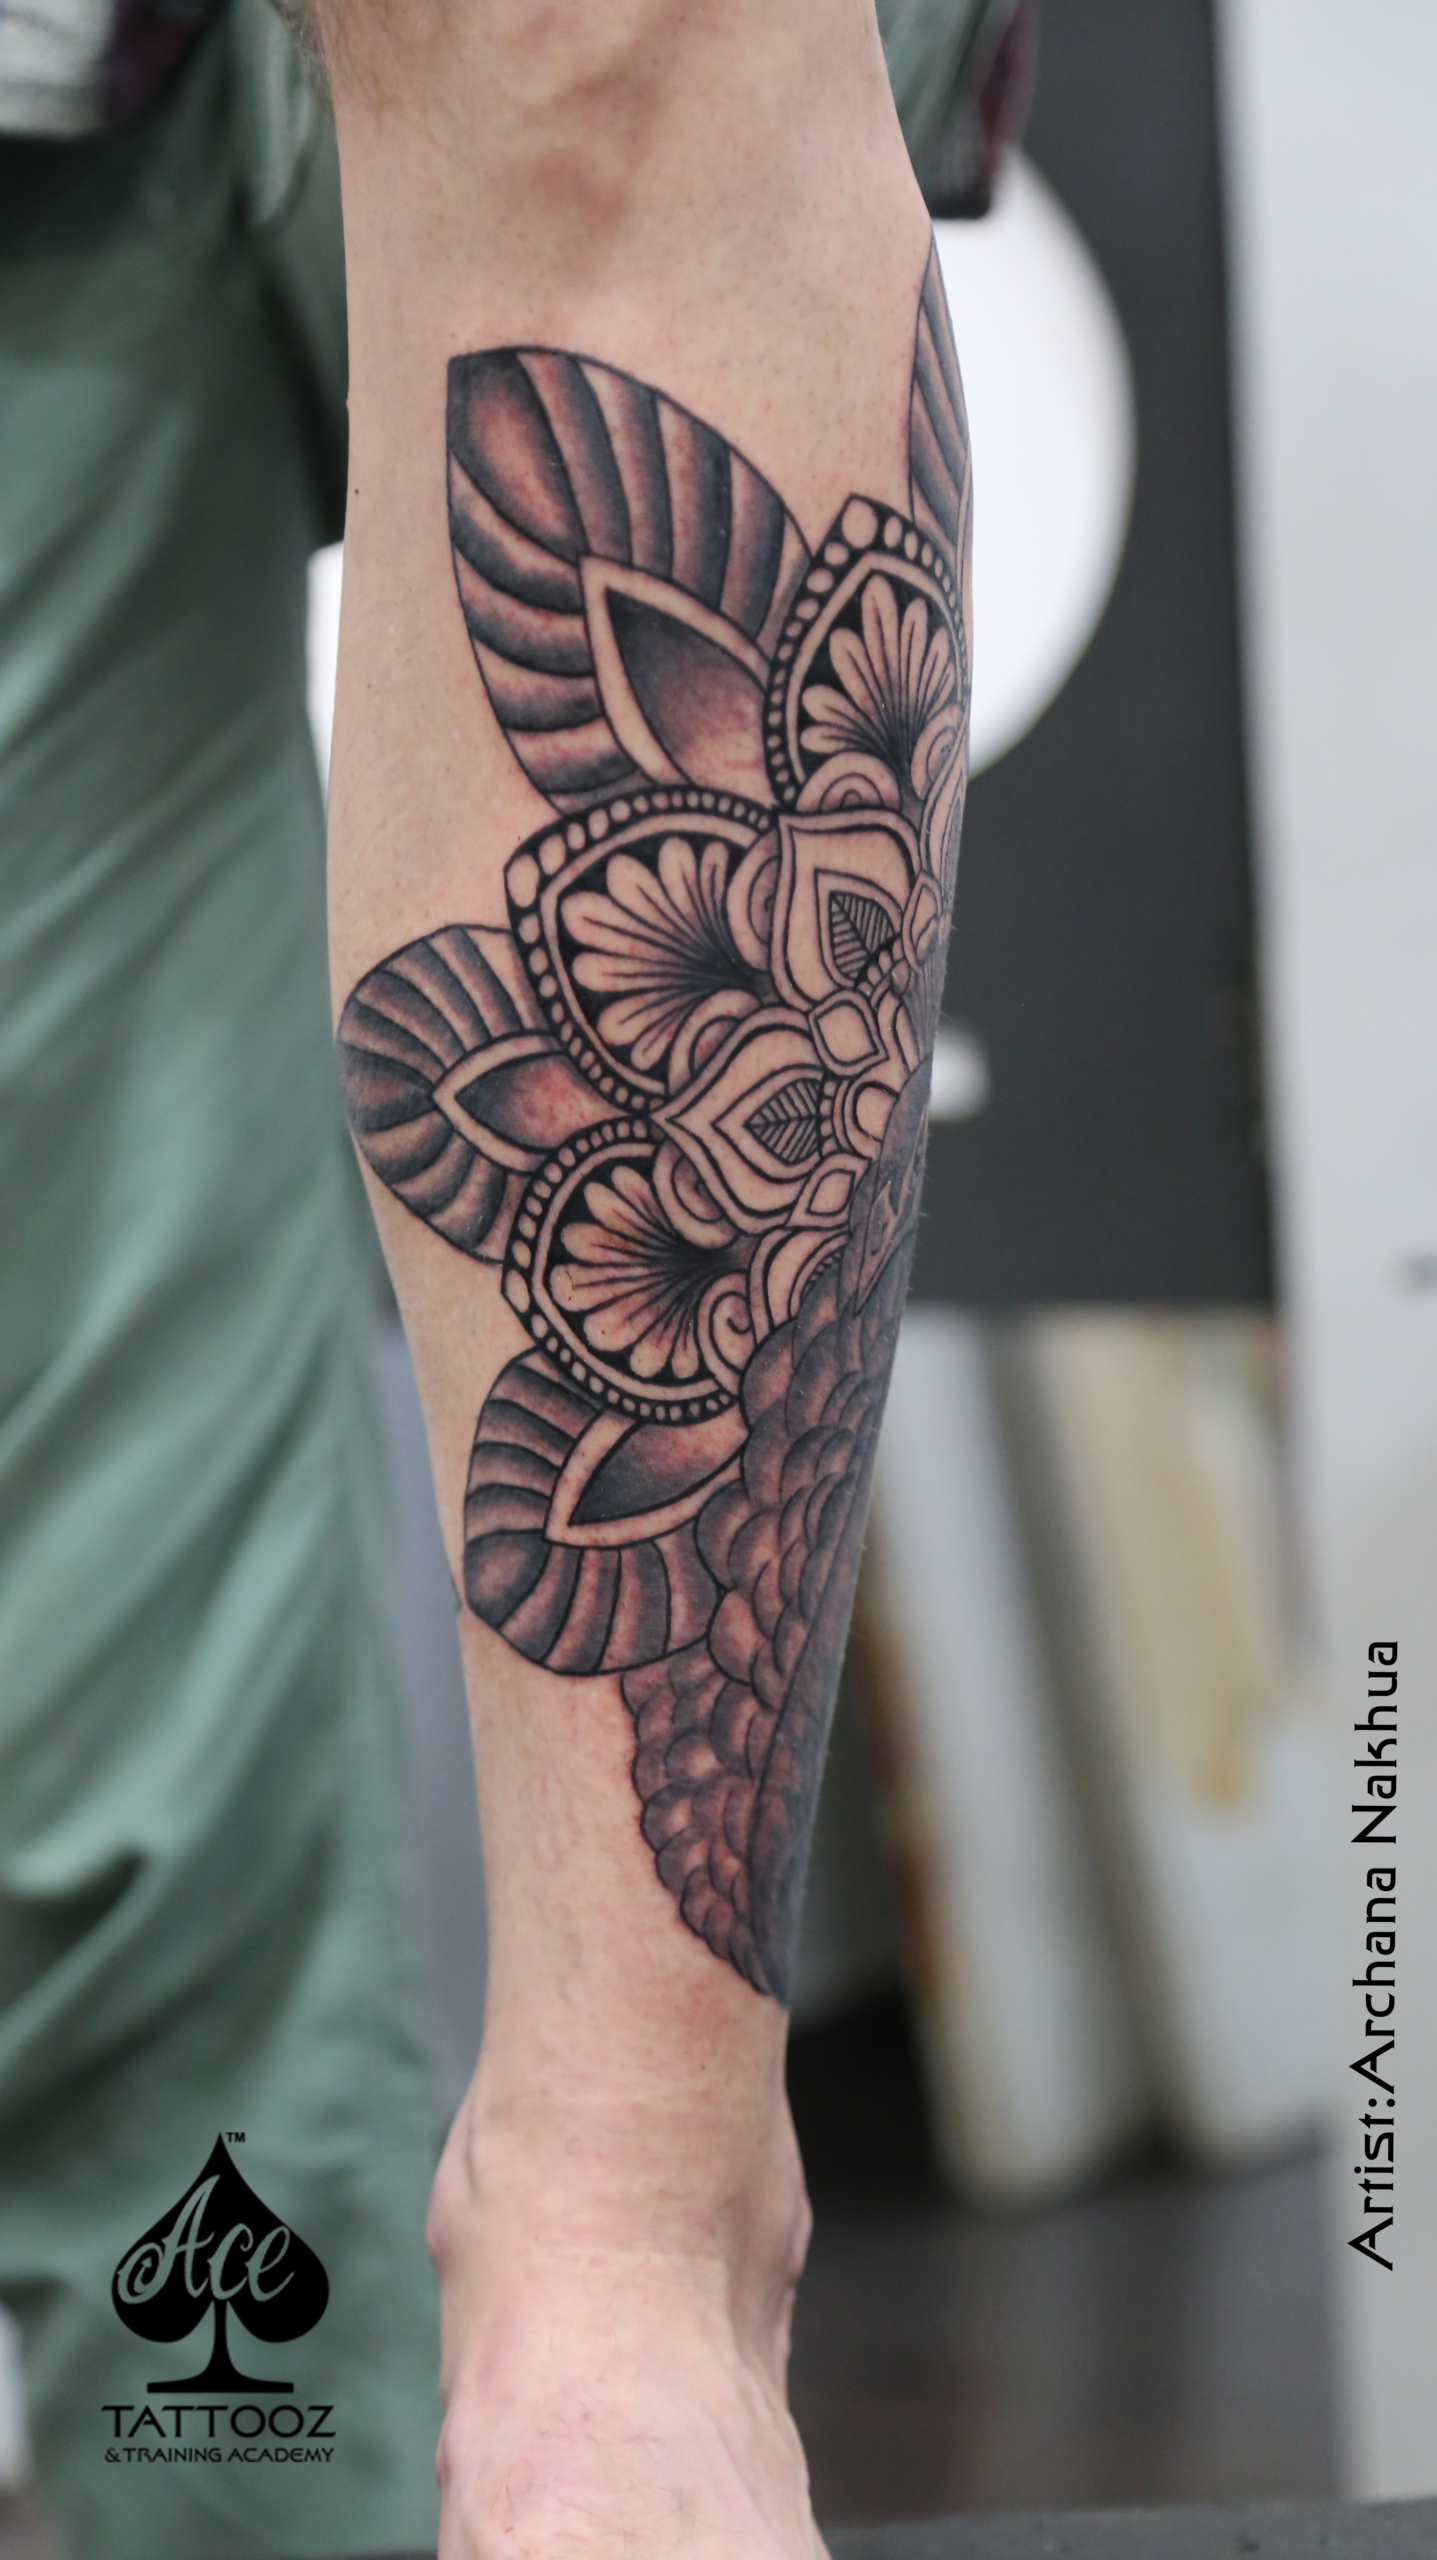 Amma with Heart Tattoo | Compass tattoo design, Heart tattoo, Ink tattoo